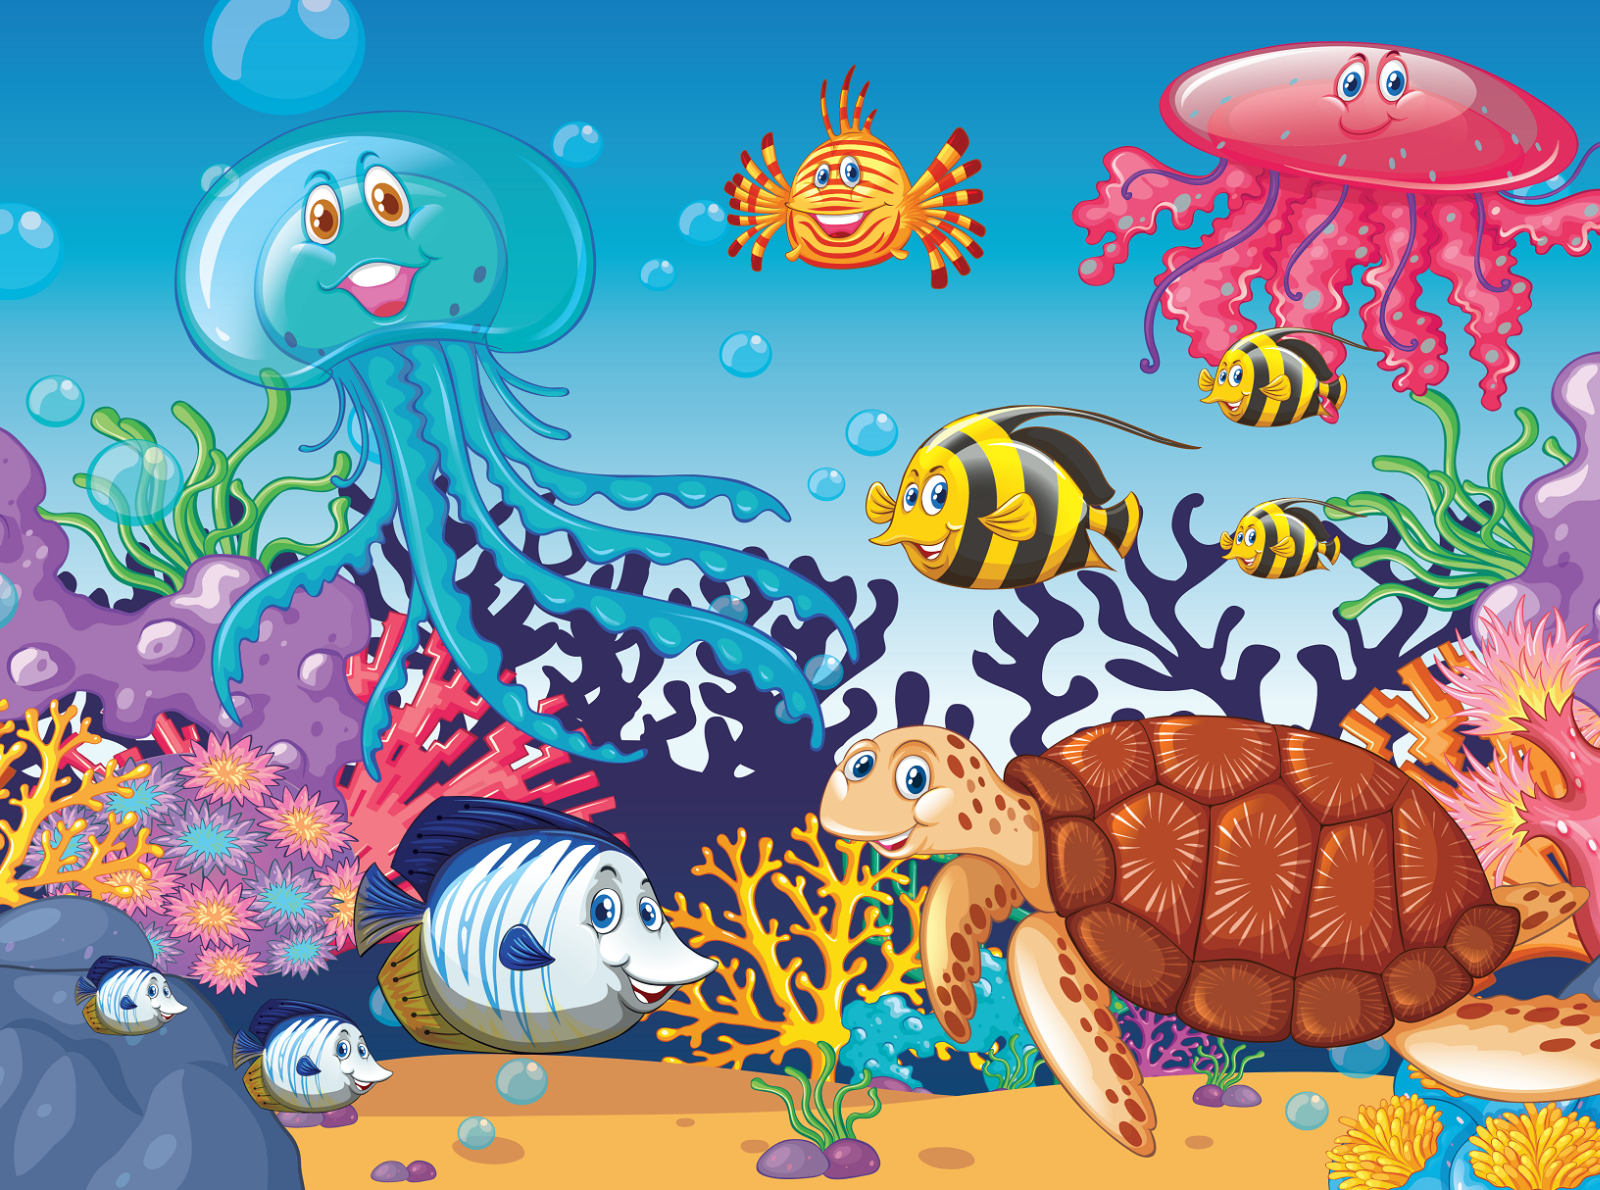 aquatic animals clipart images